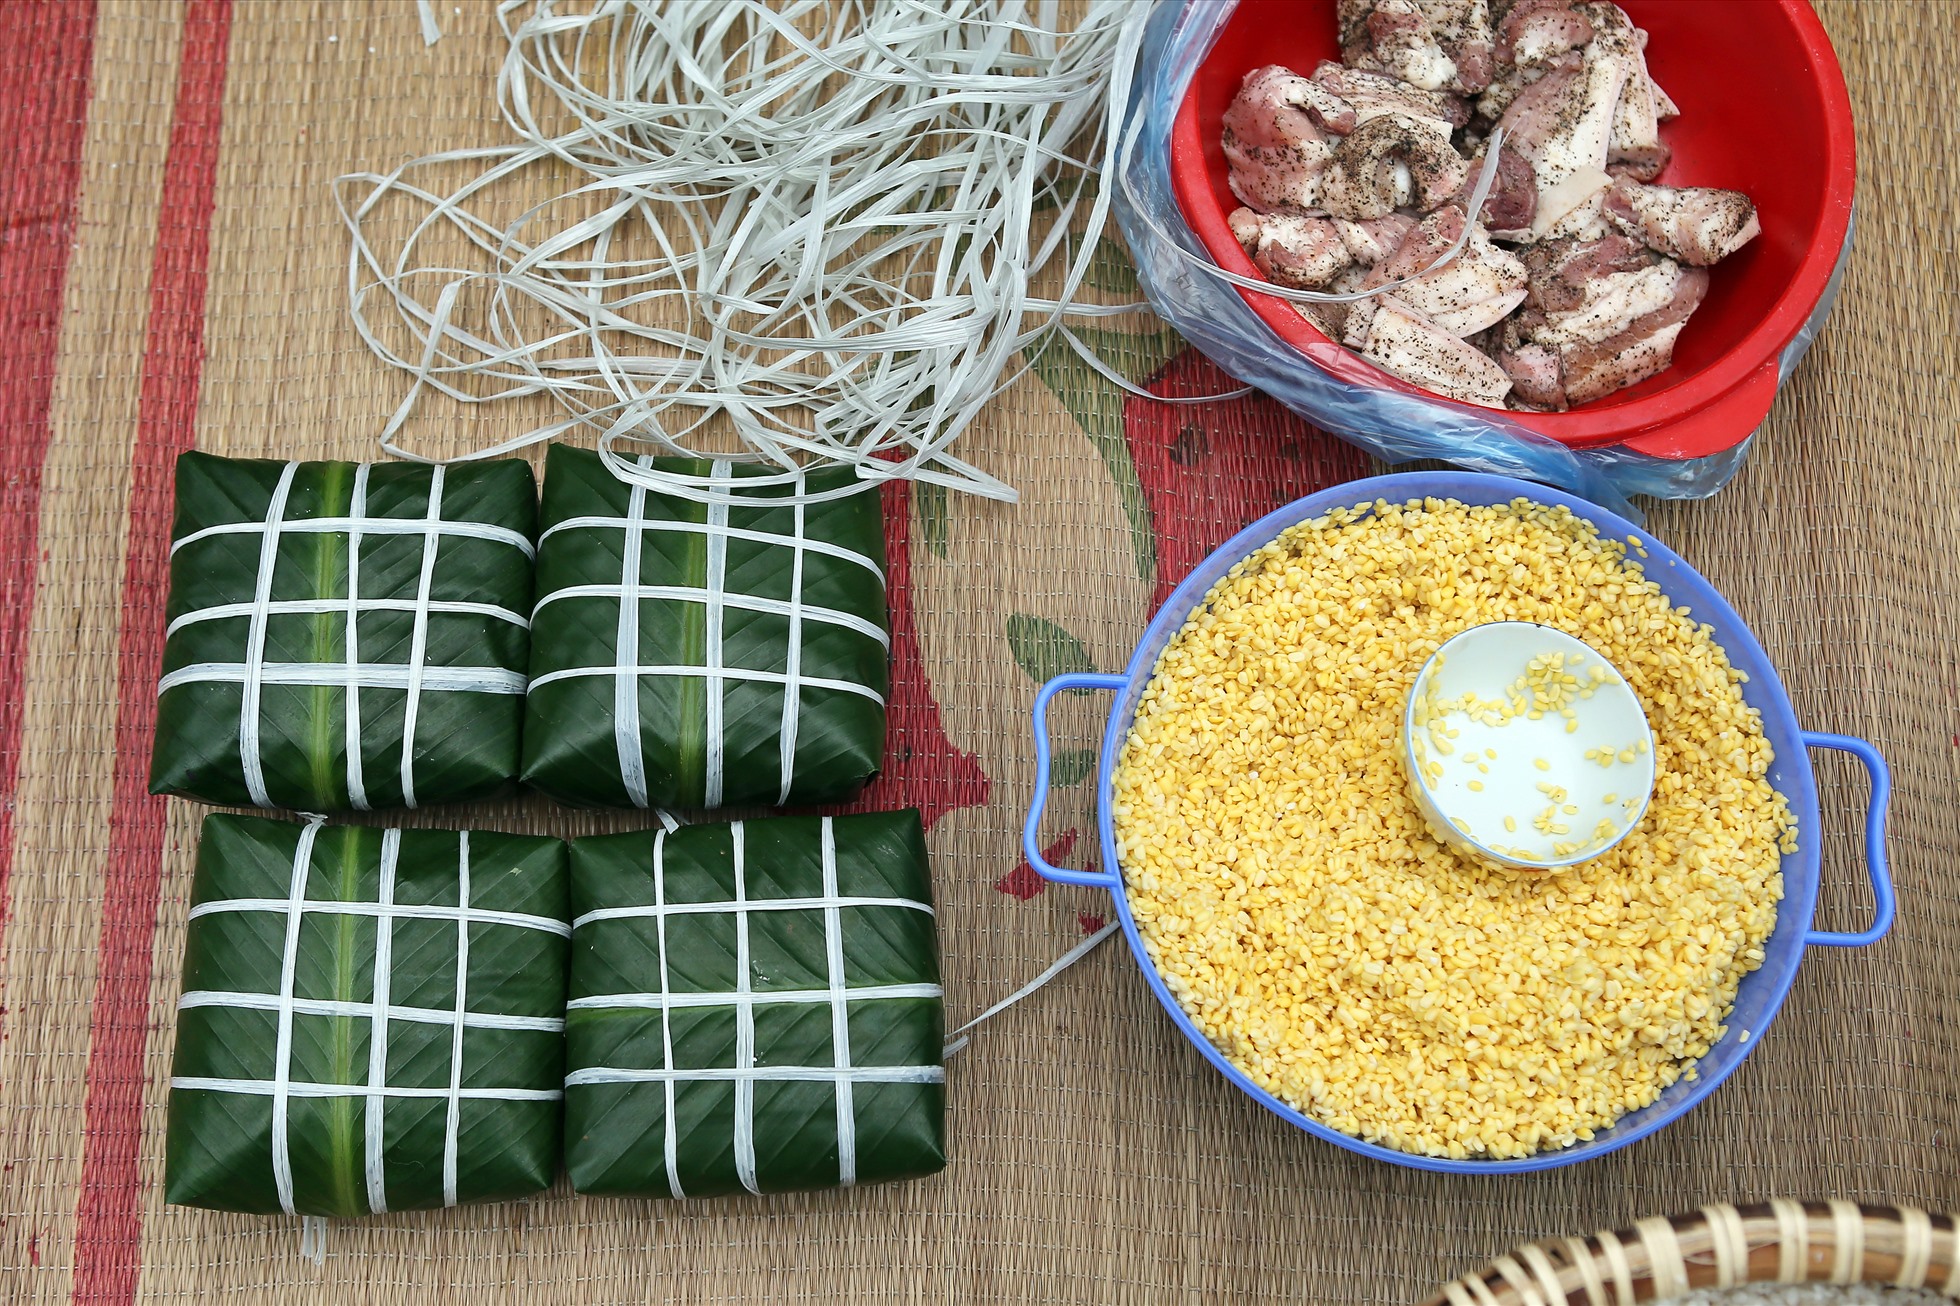 Những nguyên liệu chính để làm ra những chiếc bánh chưng gồm lá dong, gạo nếp, đậu xanh, thịt lợn.